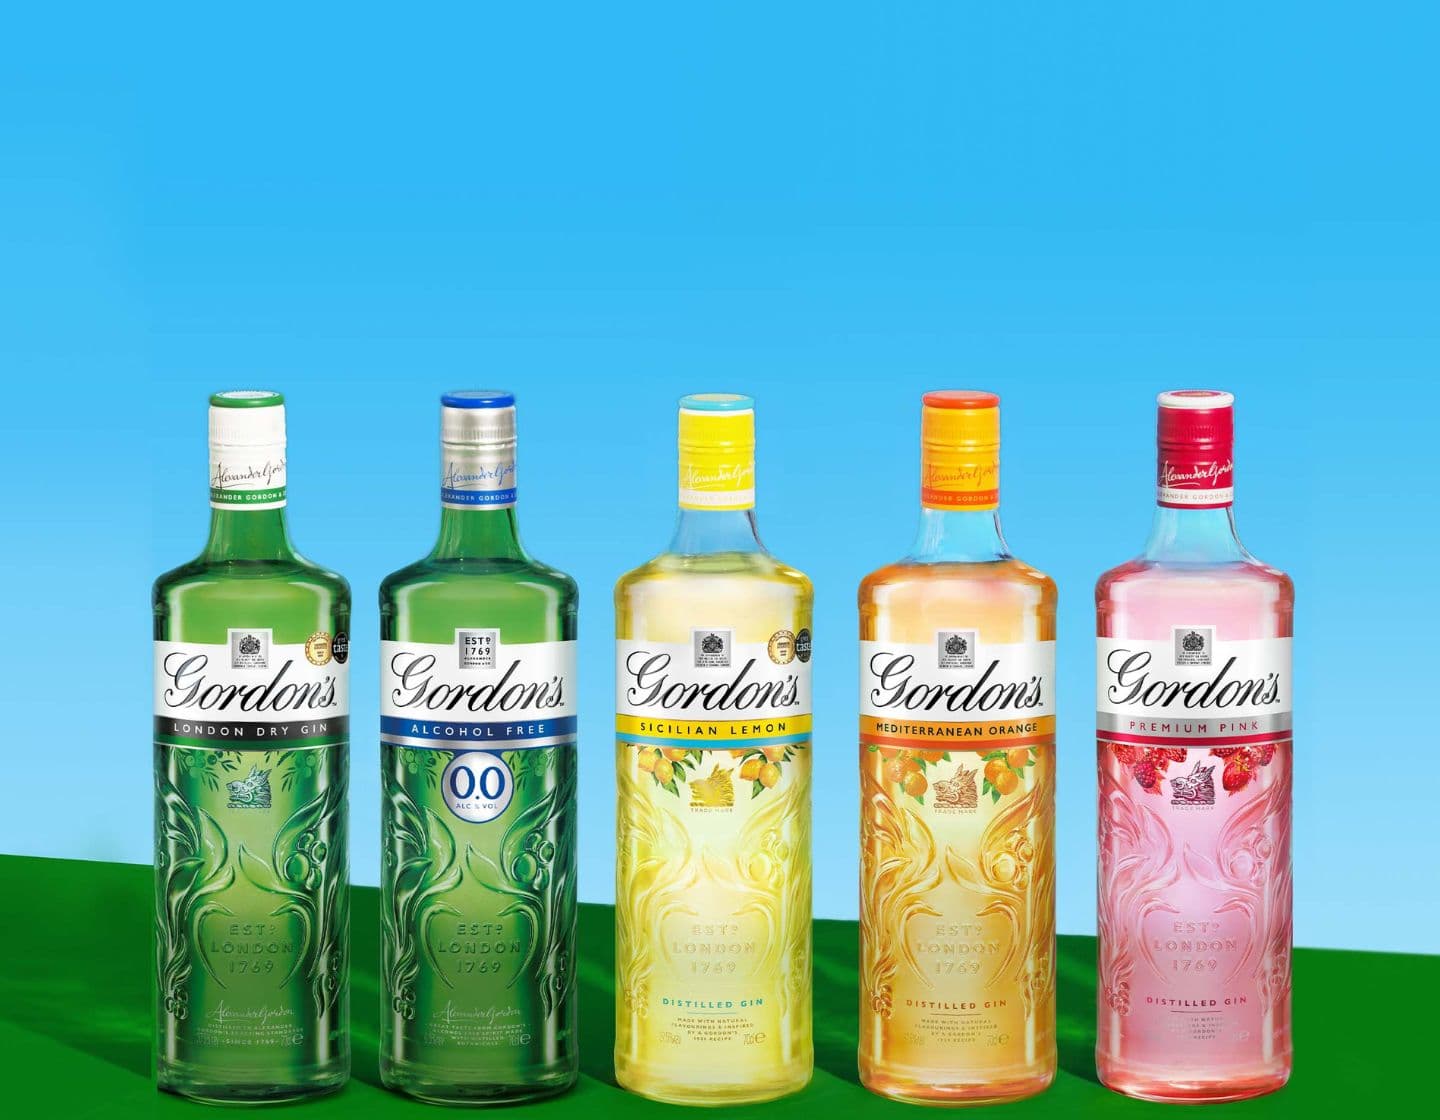 Selección de botellas de ginebra Gordon's sobre fondo azul y amarillo